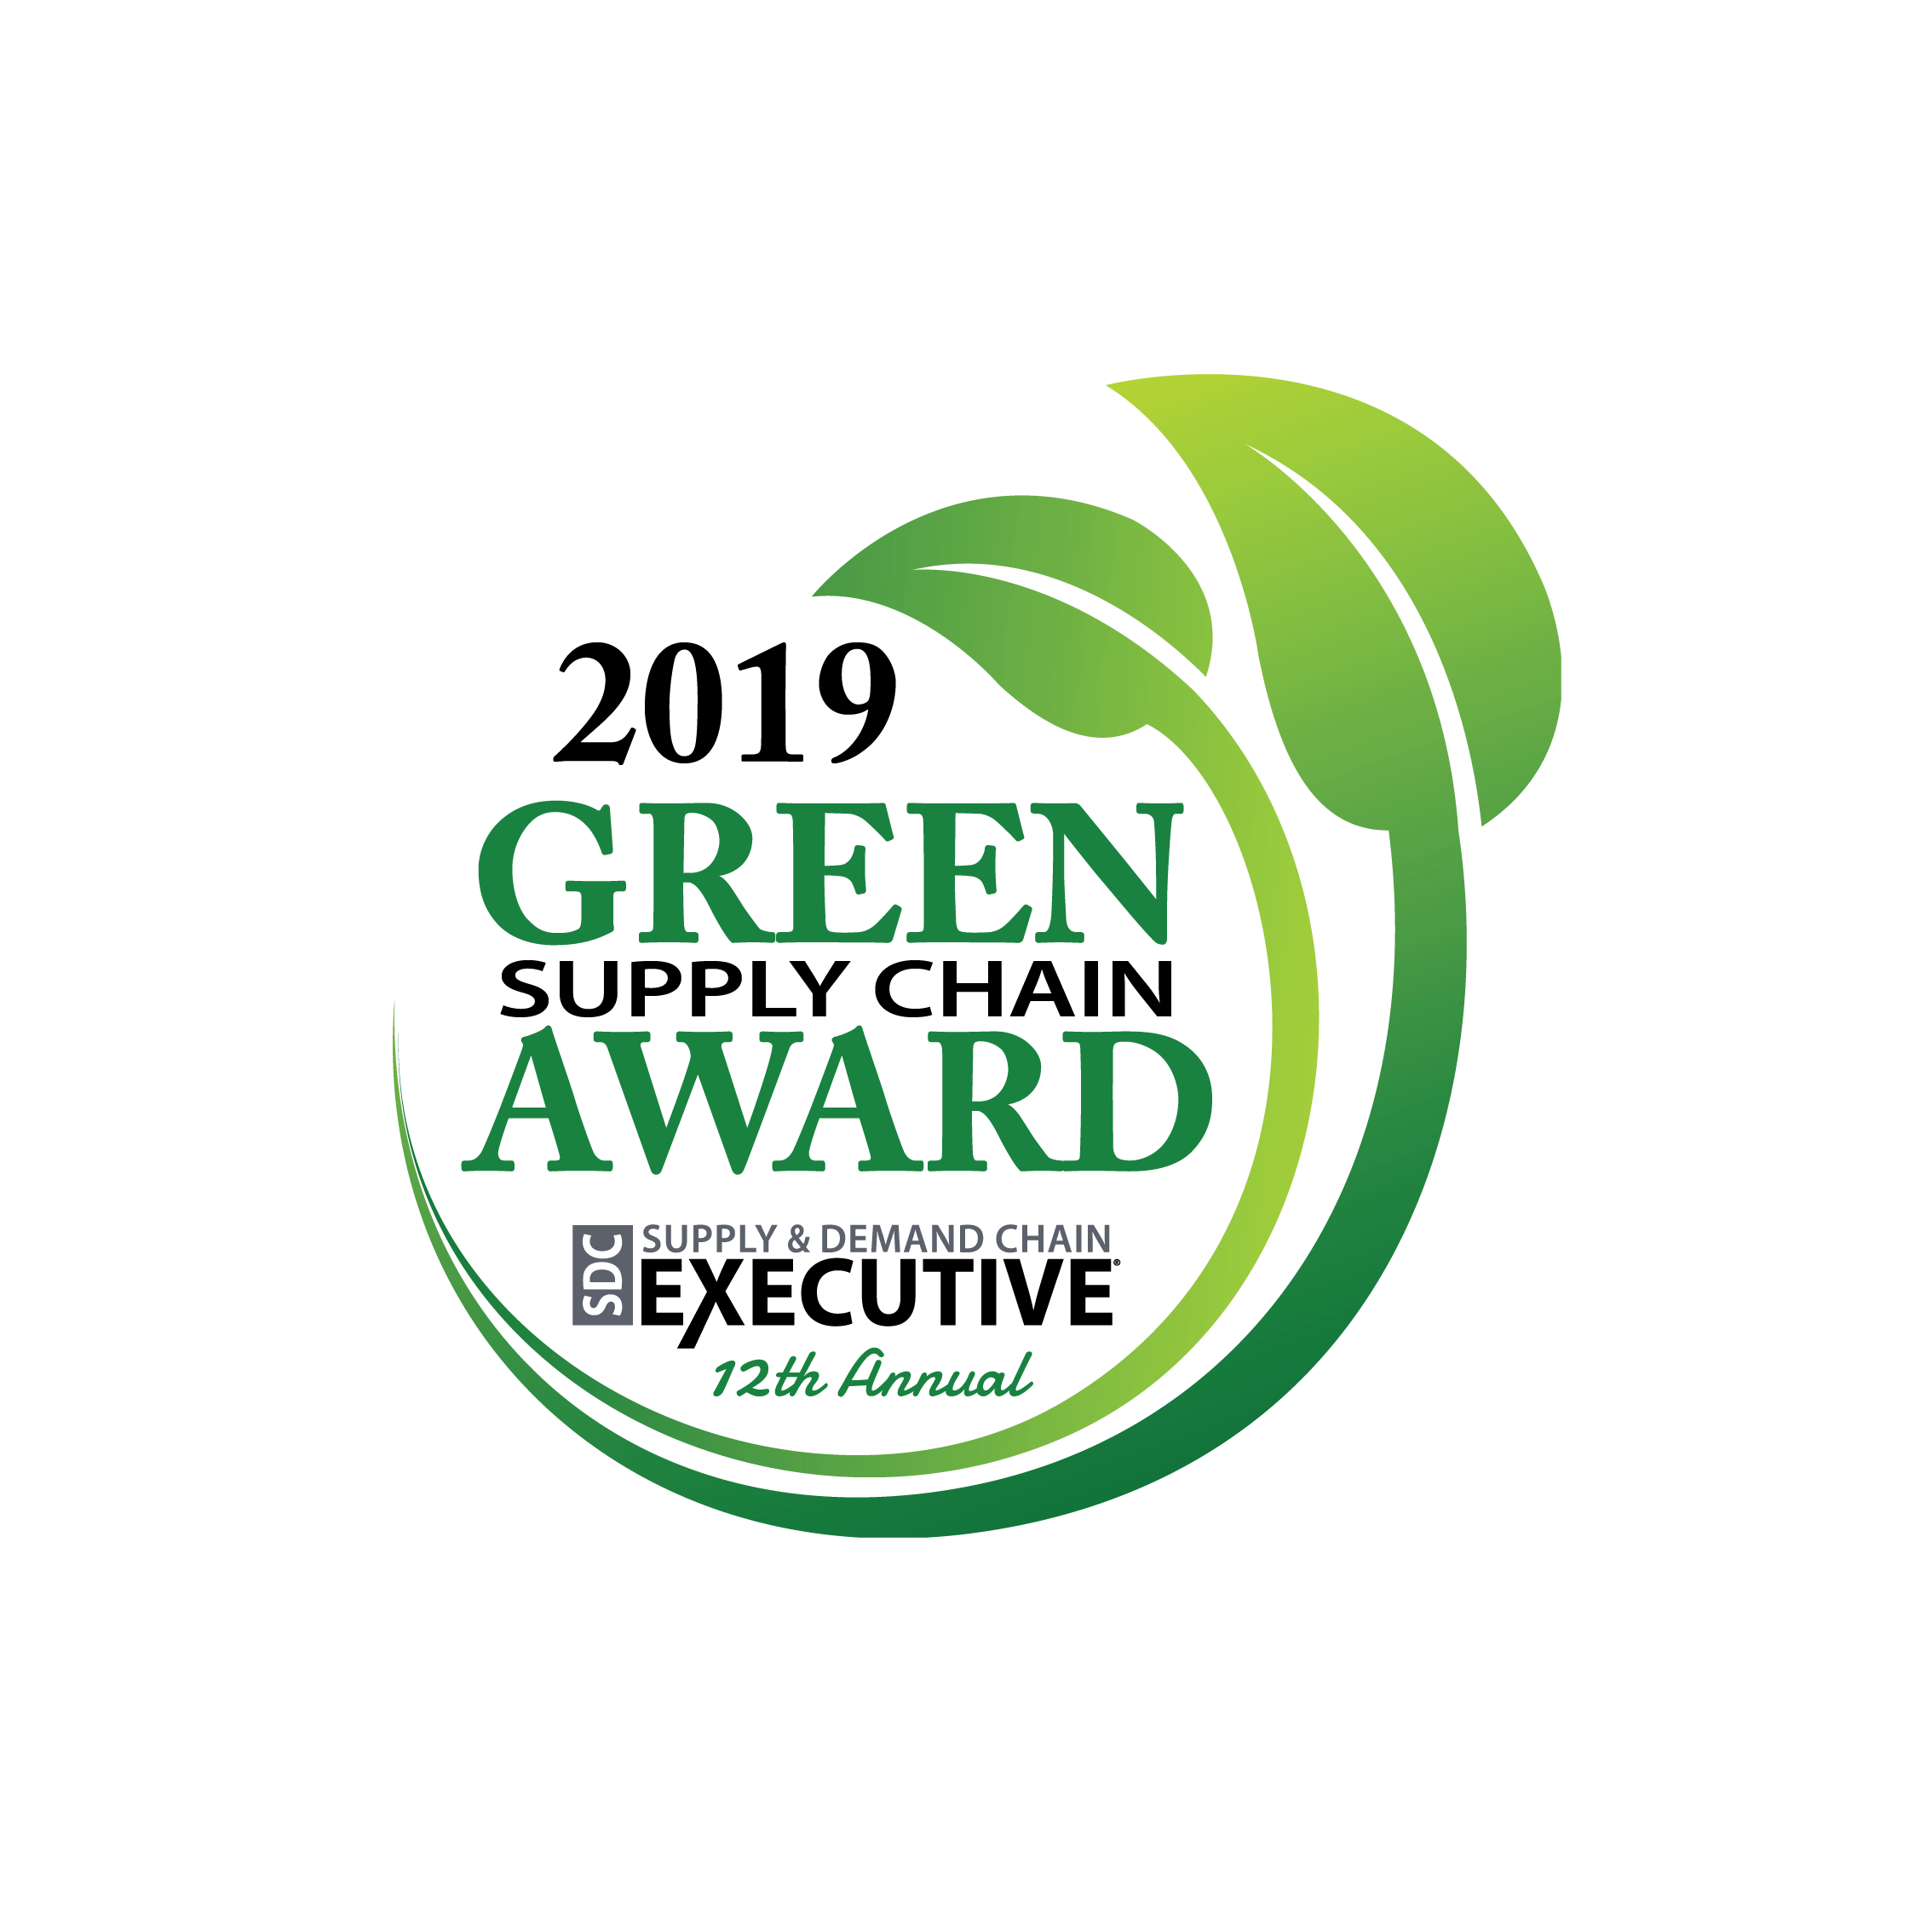 2019 Green Supply Chain Award | SDC Supply & Demand Chain Executive | 12th Annual